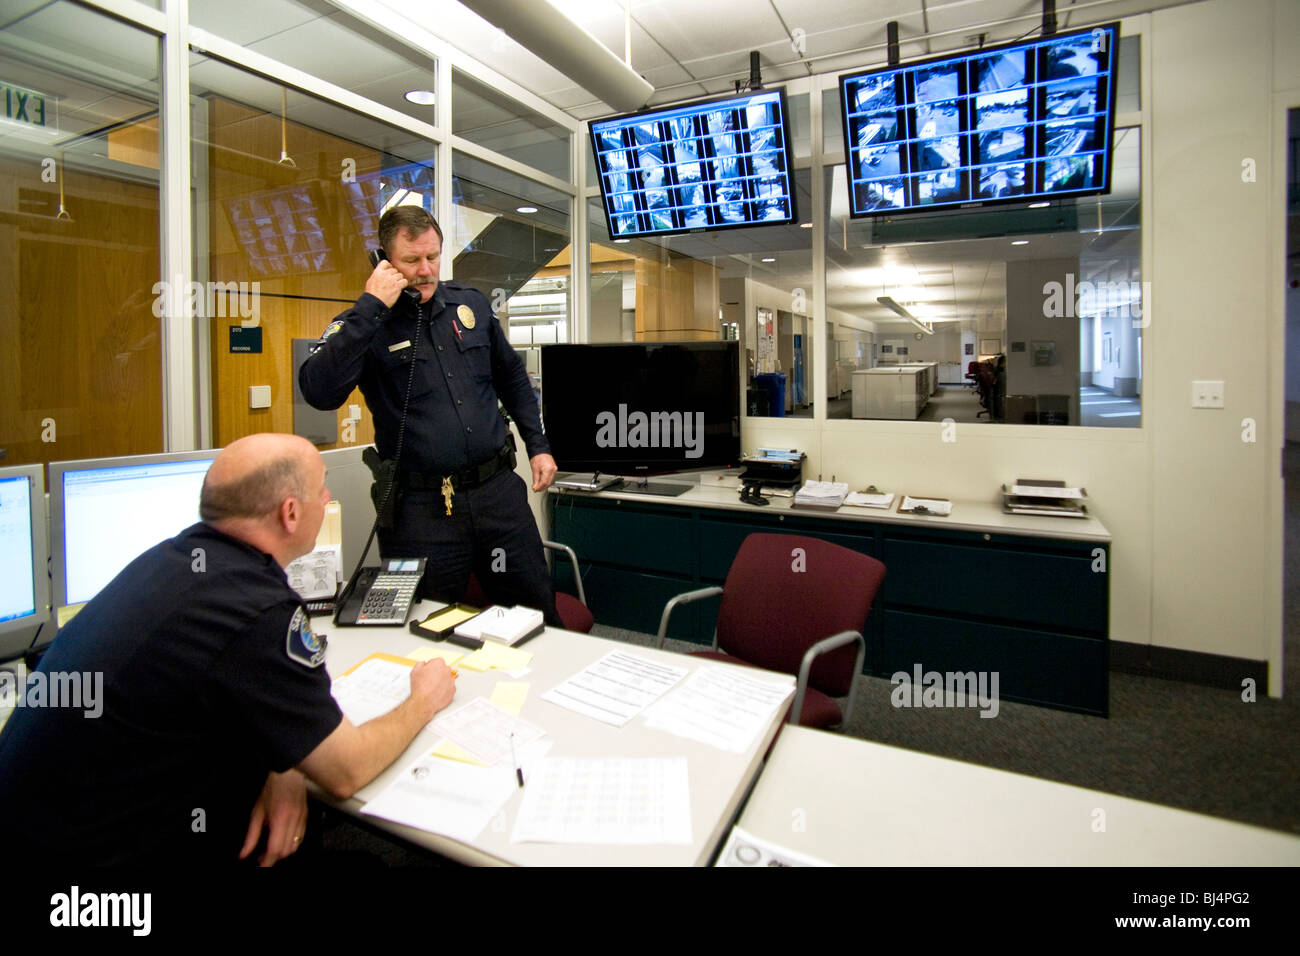 Comando Central en Santa Ana, California, sede de la policía utiliza múltiples imágenes de pantallas de vídeo para controlar las zonas de seguridad. Foto de stock